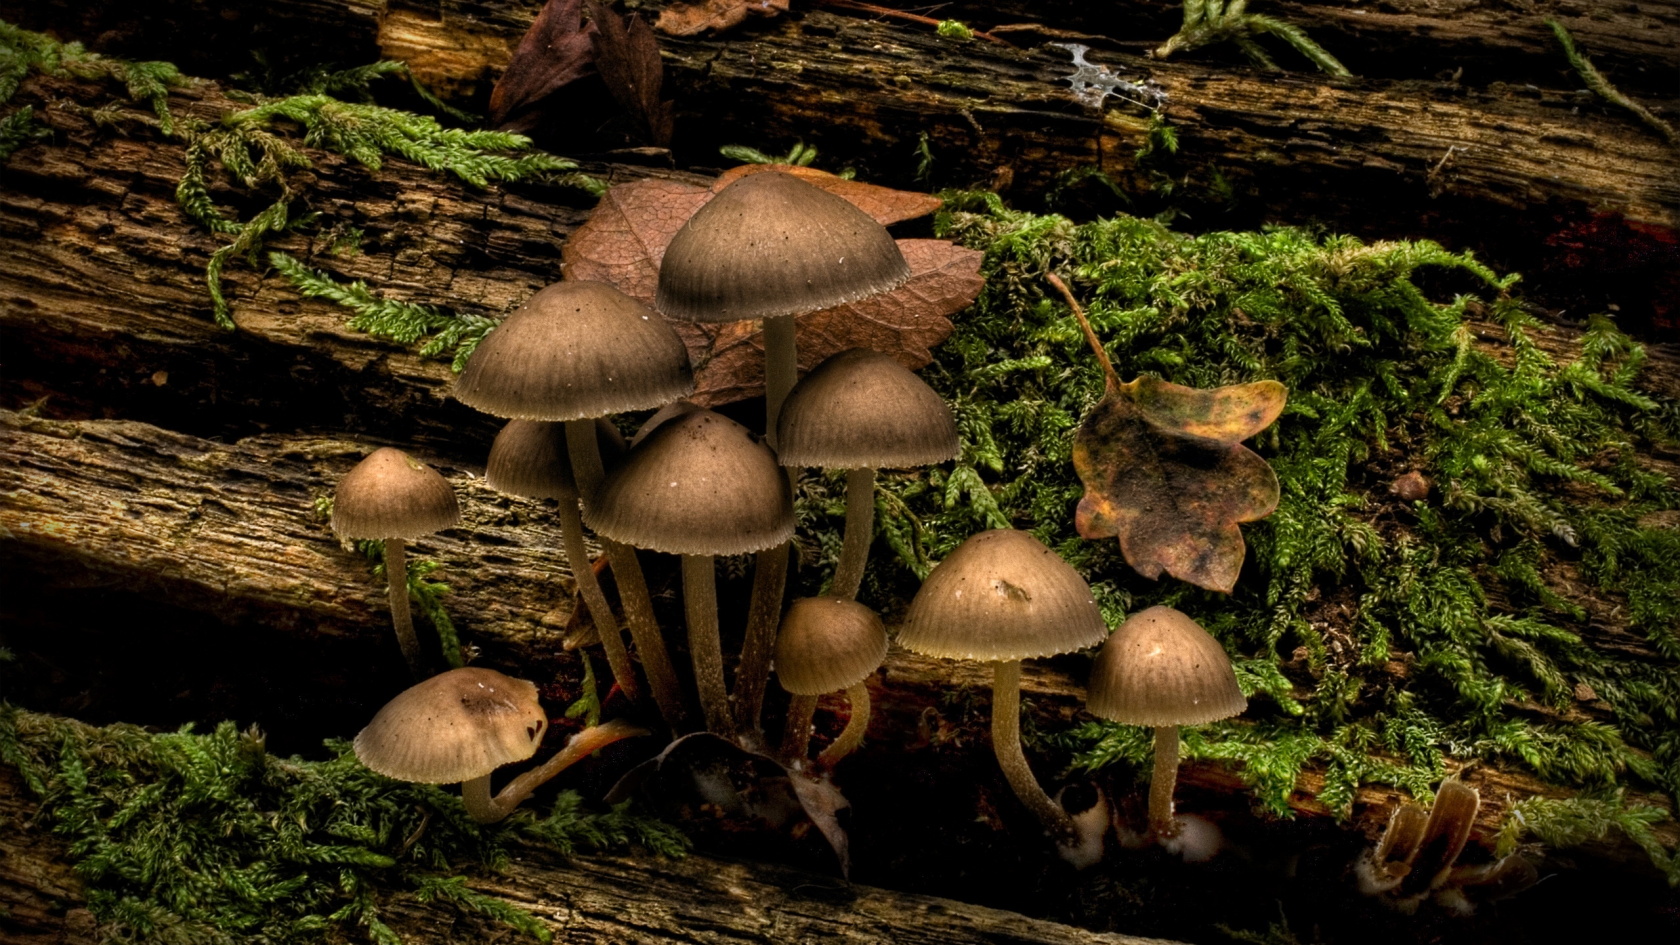 Mushrooms for 1680 x 945 HDTV resolution